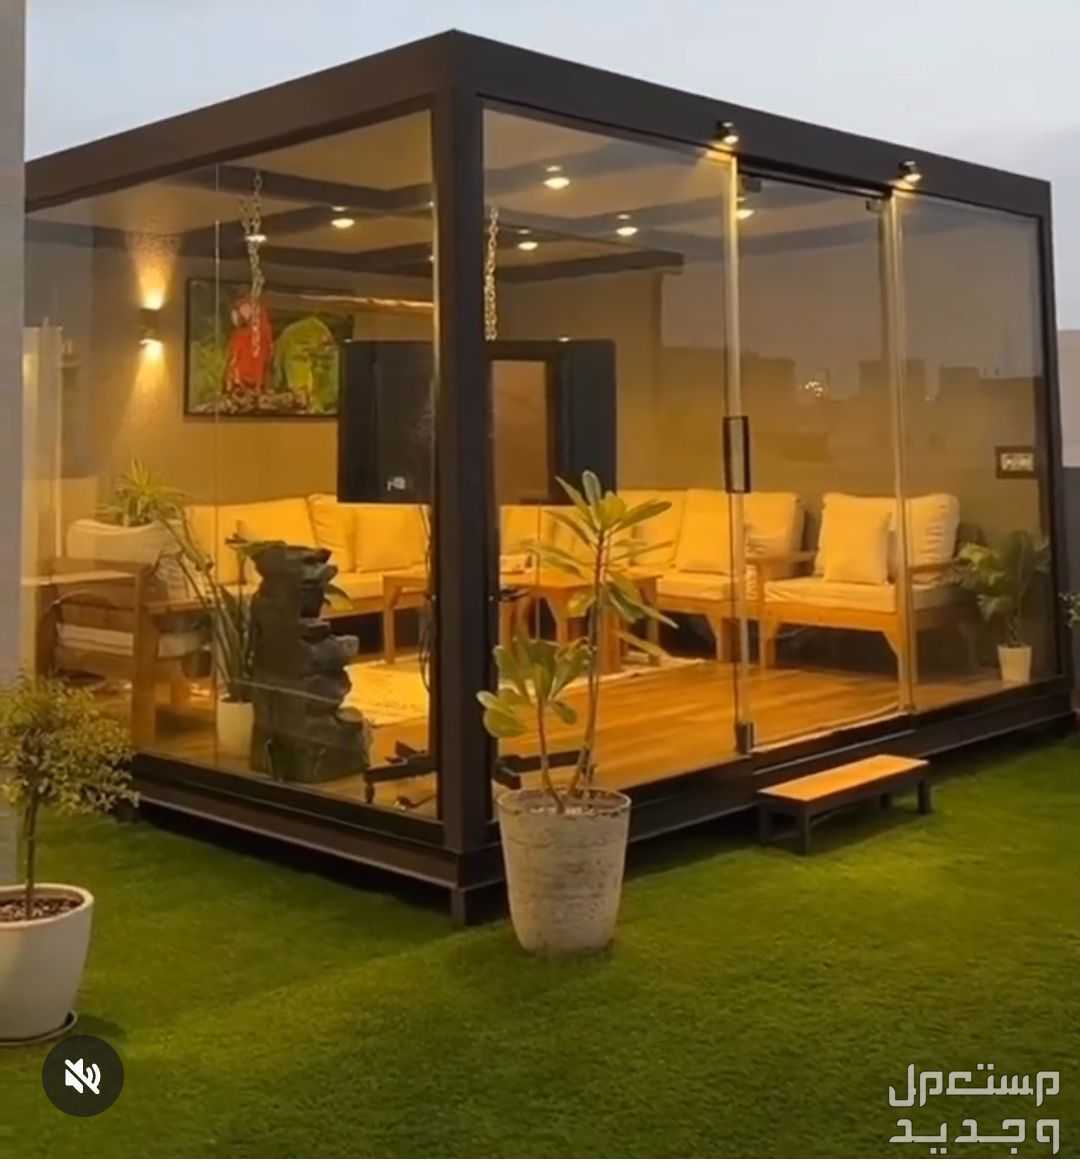 تصميم غرف زجاجية وجلسات  في جدة